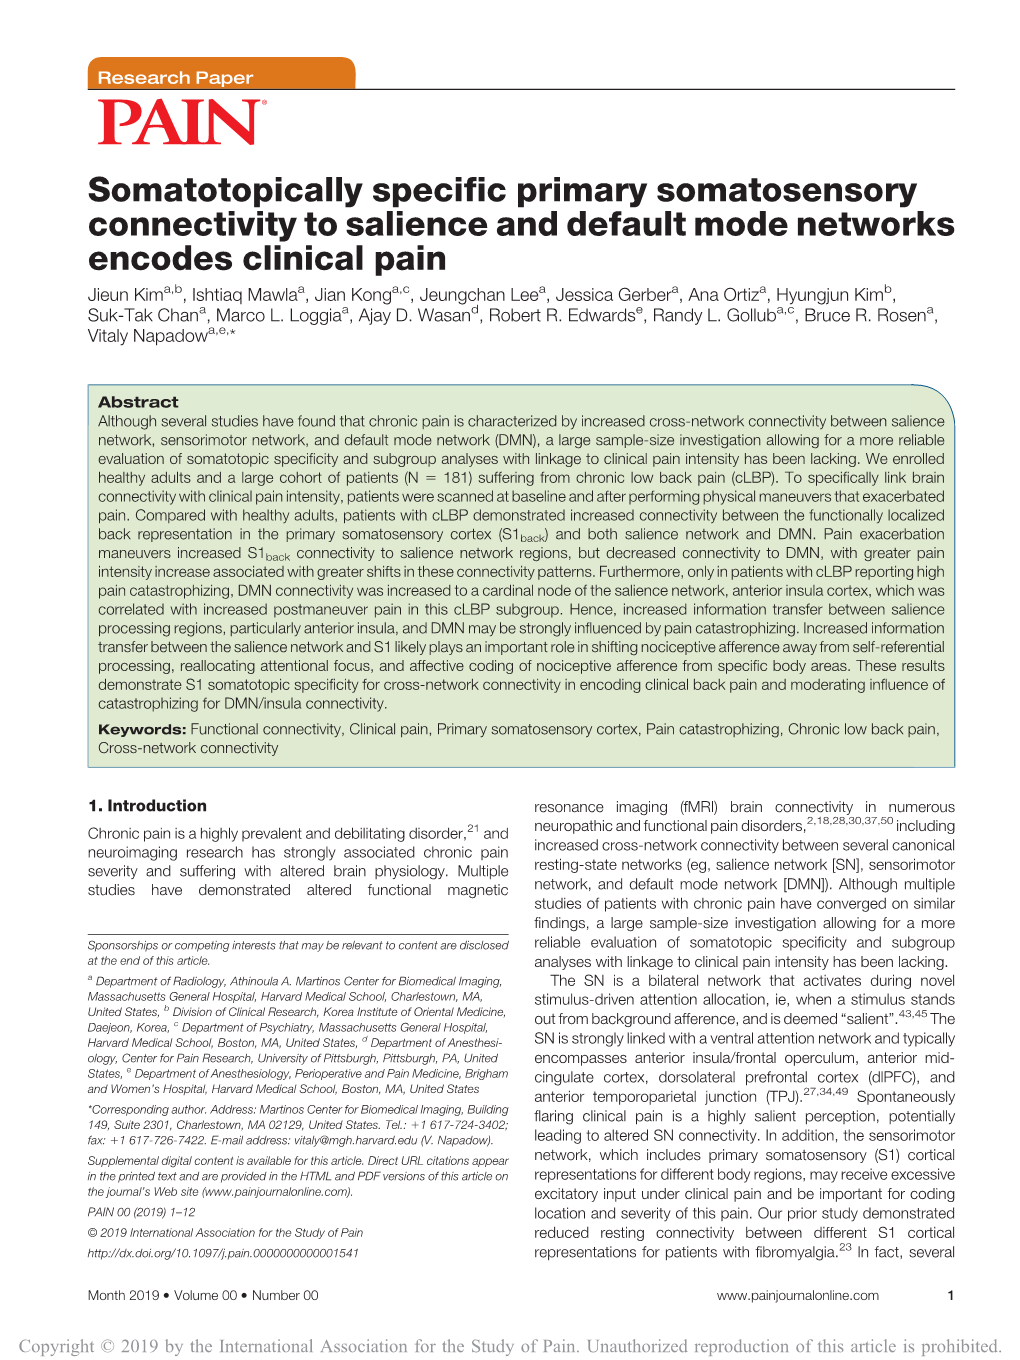 Somatotopically Specific Primary Somatosensory Connectivity To